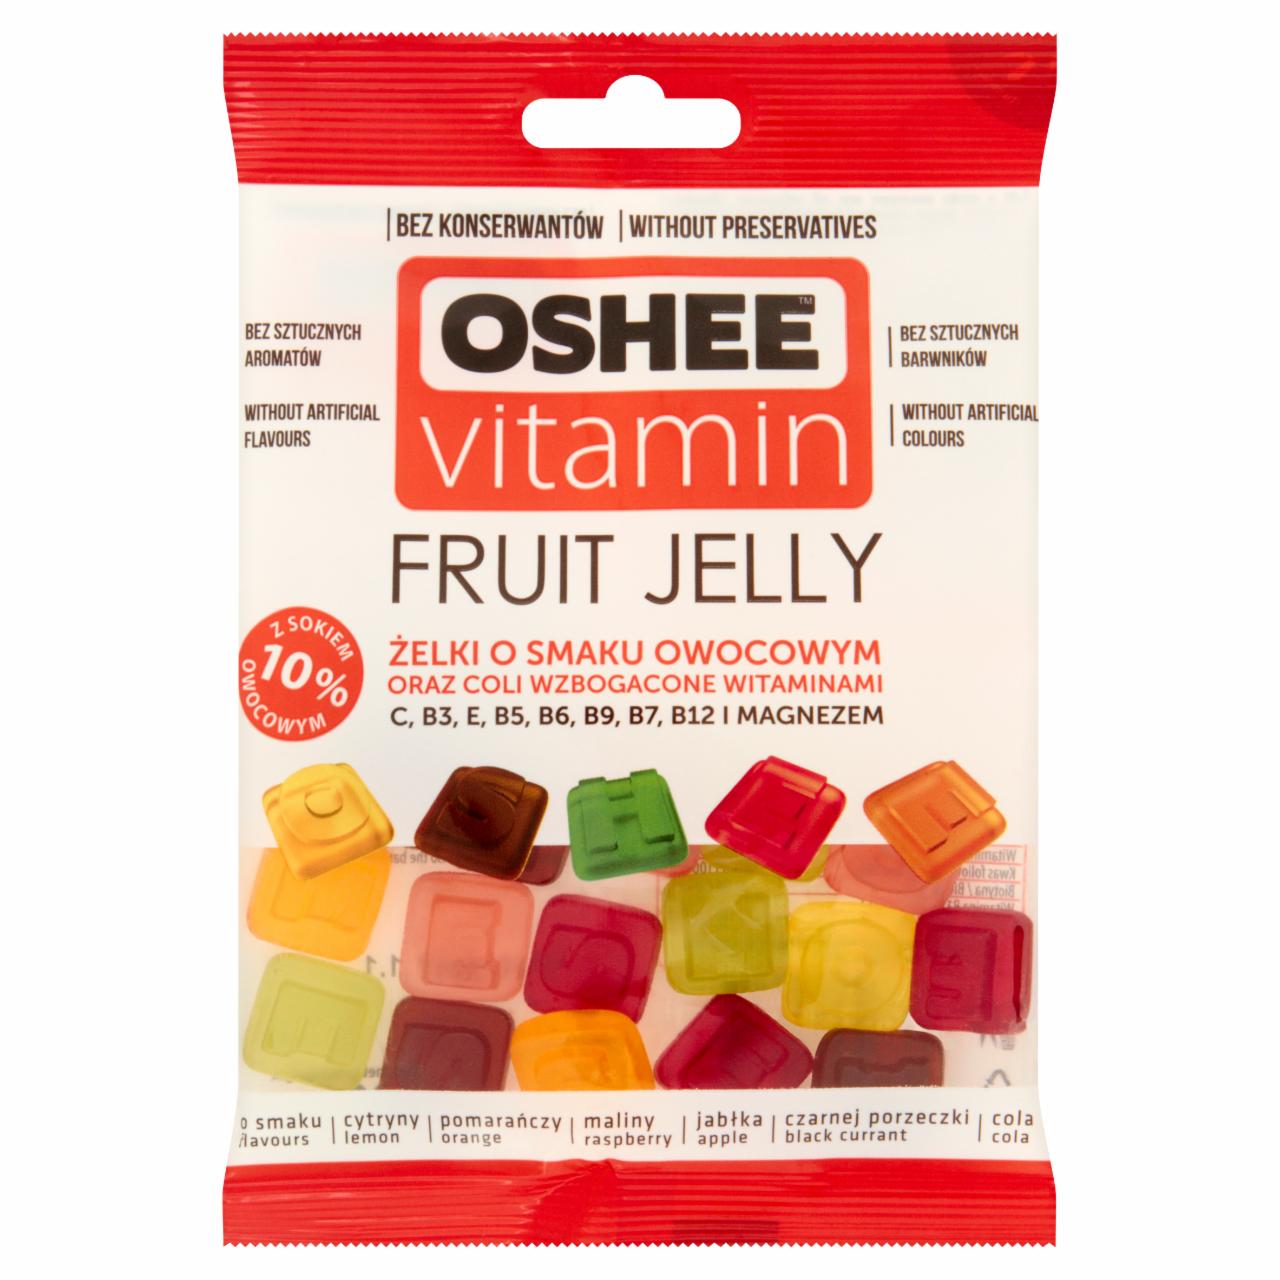 Zdjęcia - Oshee Vitamin Żelki o smaku owocowym oraz coli wzbogacone witaminami 100 g